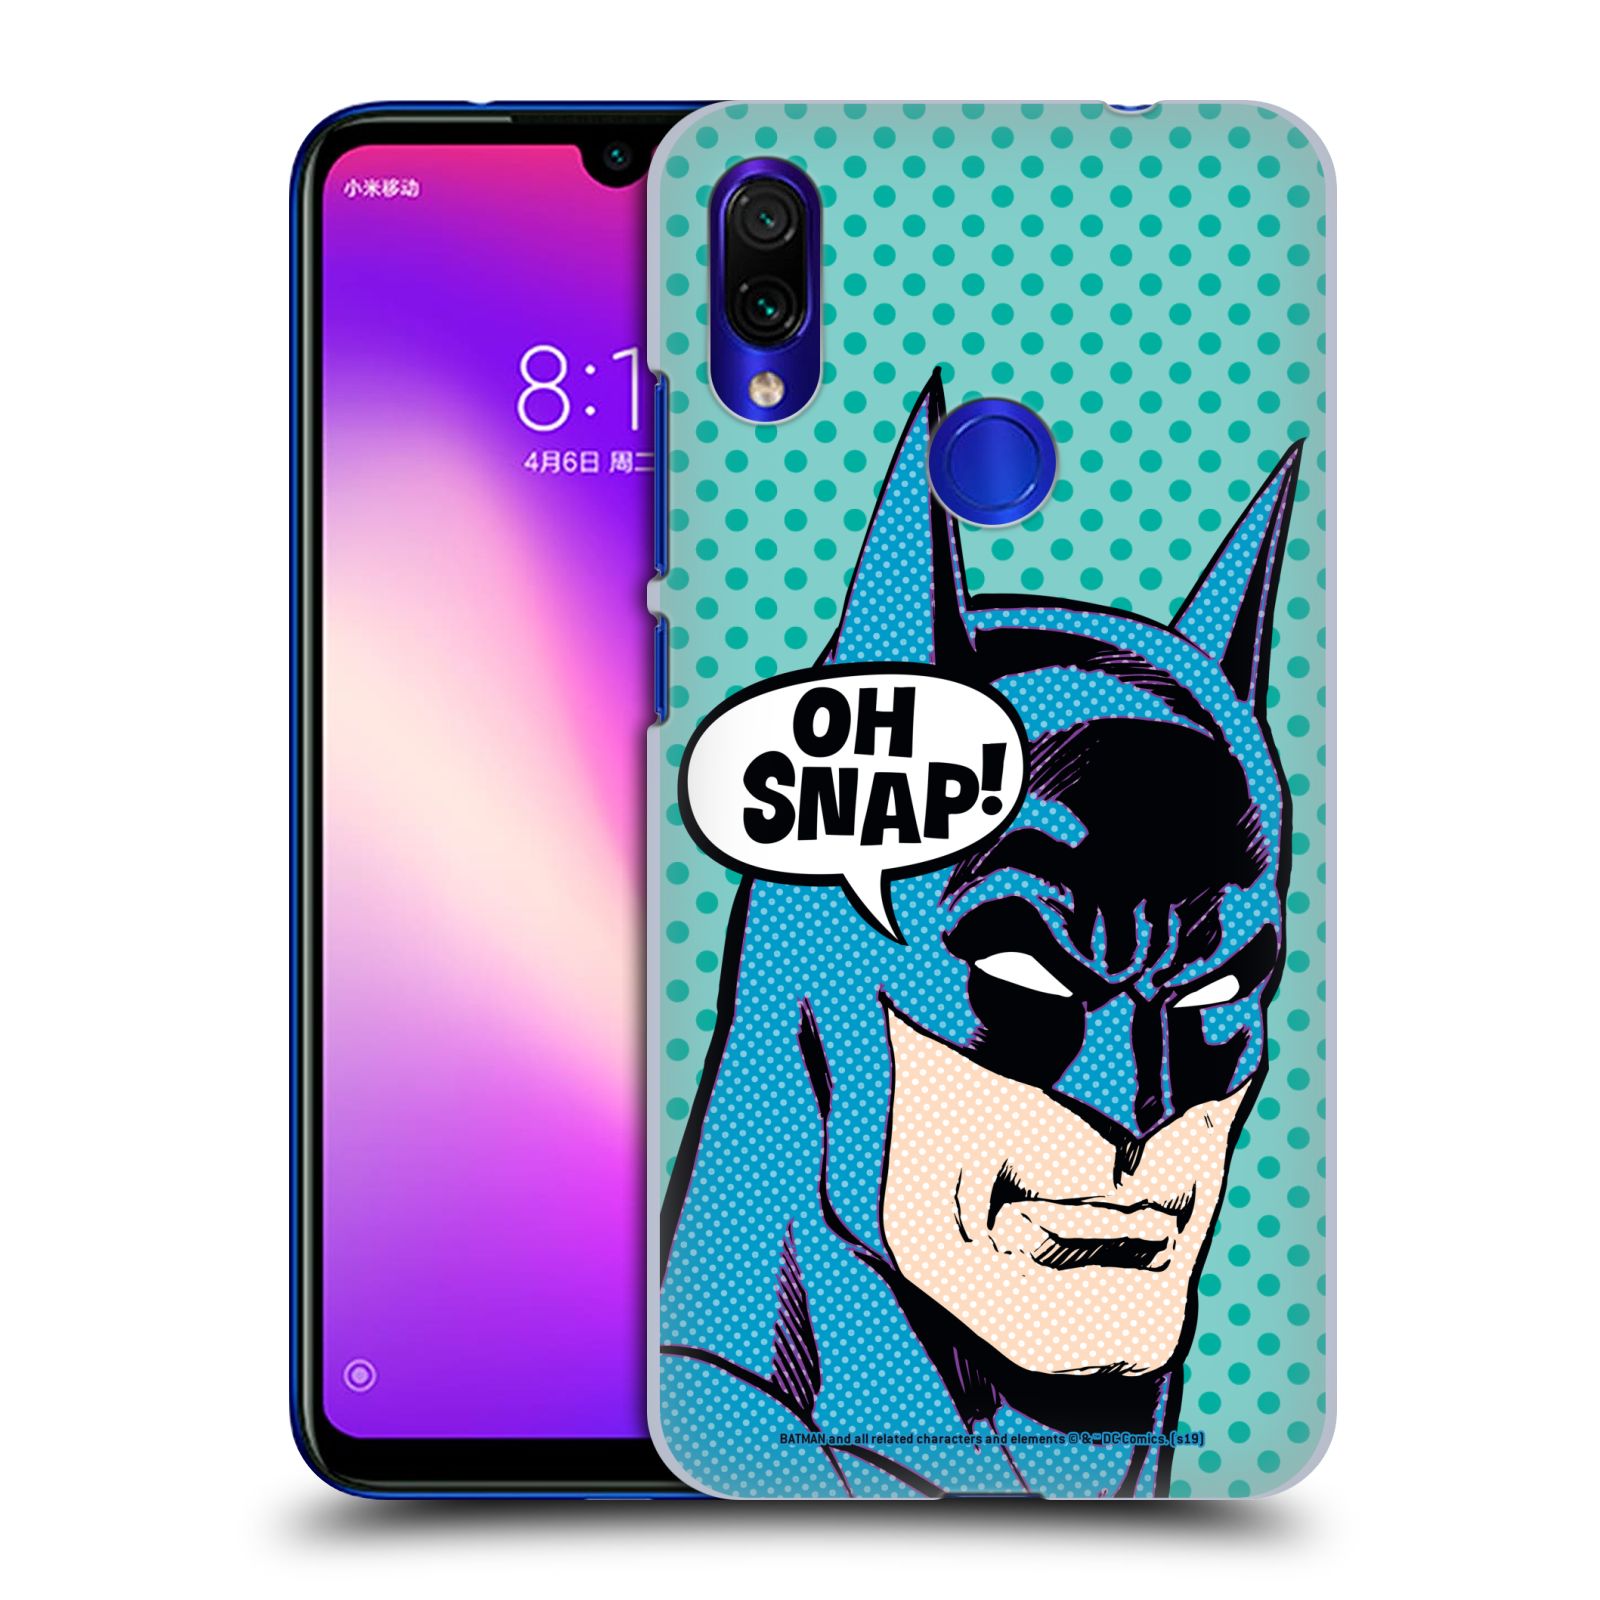 Pouzdro na mobil Xiaomi Redmi Note 7 - HEAD CASE - DC komix Batman Pop Art tvář